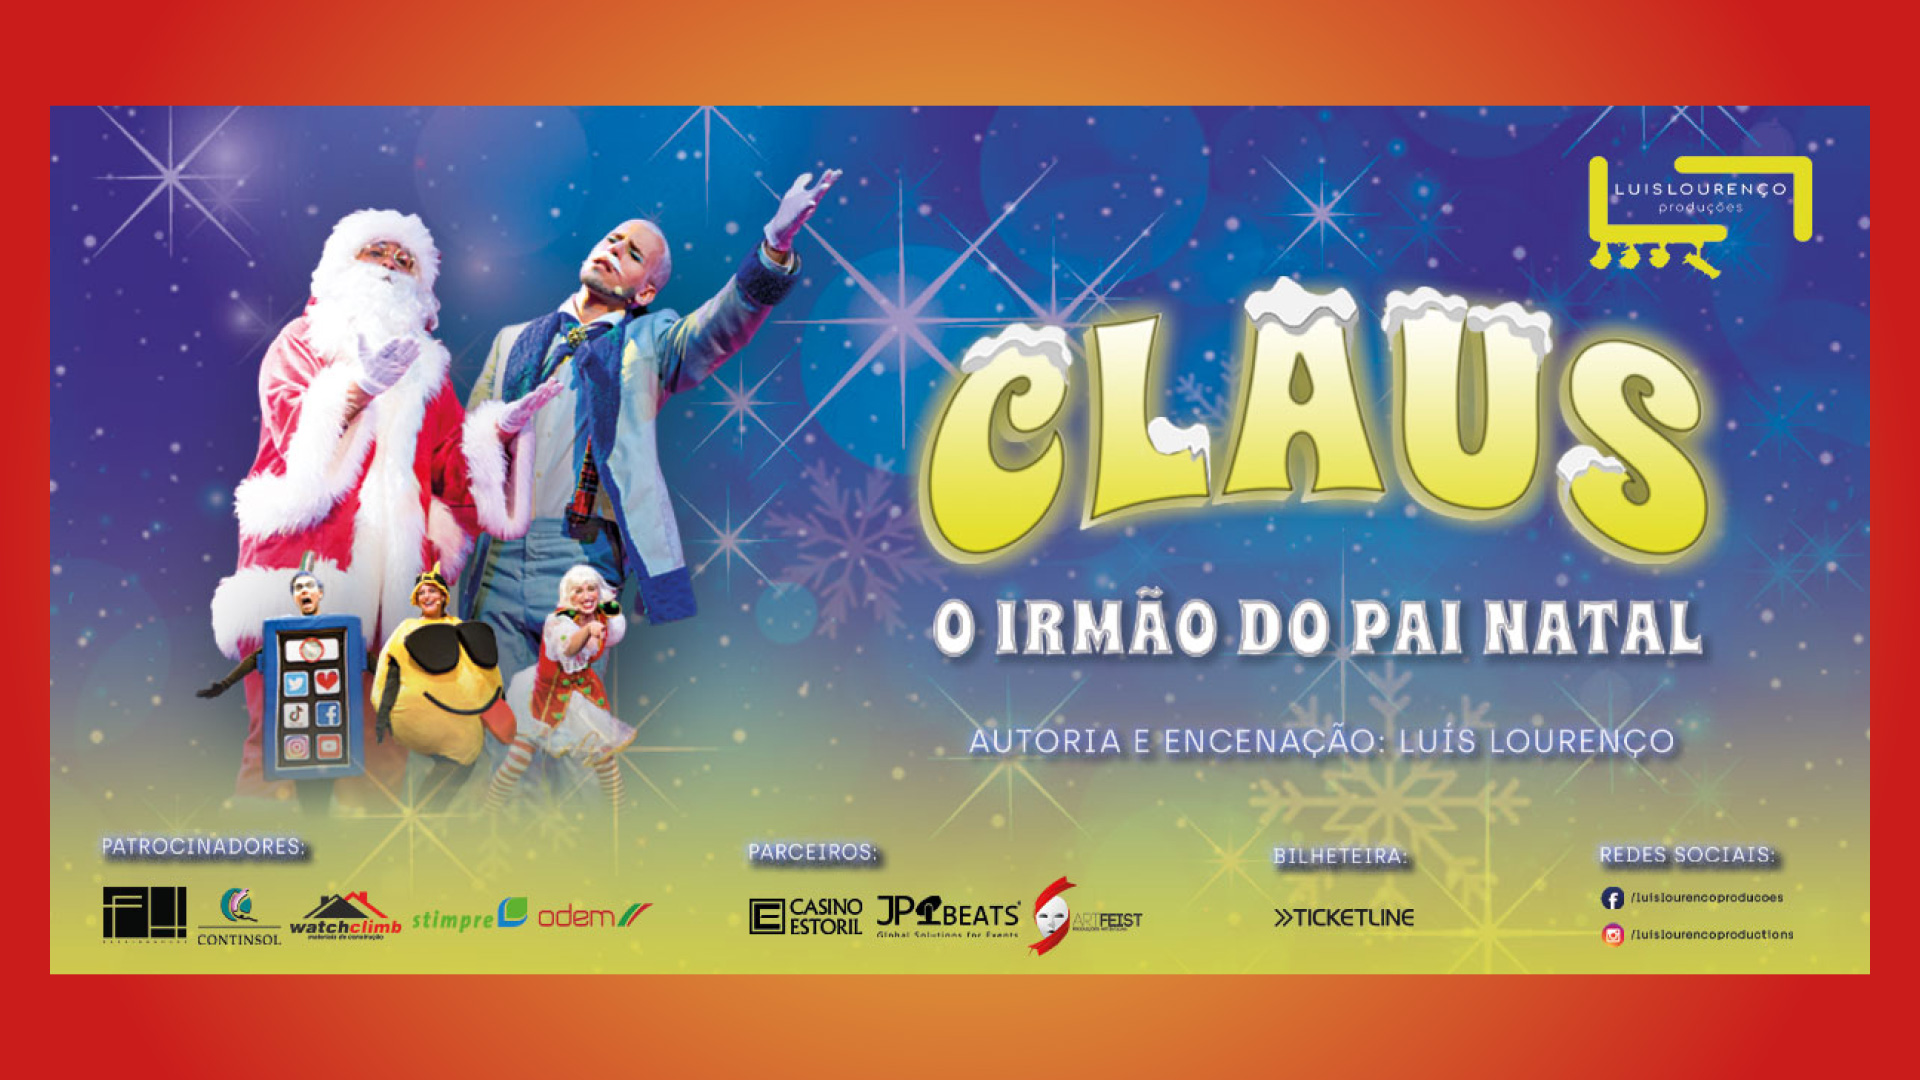 Casino Estoril estreia no Auditório “Claus – O Irmão do Pai Natal”